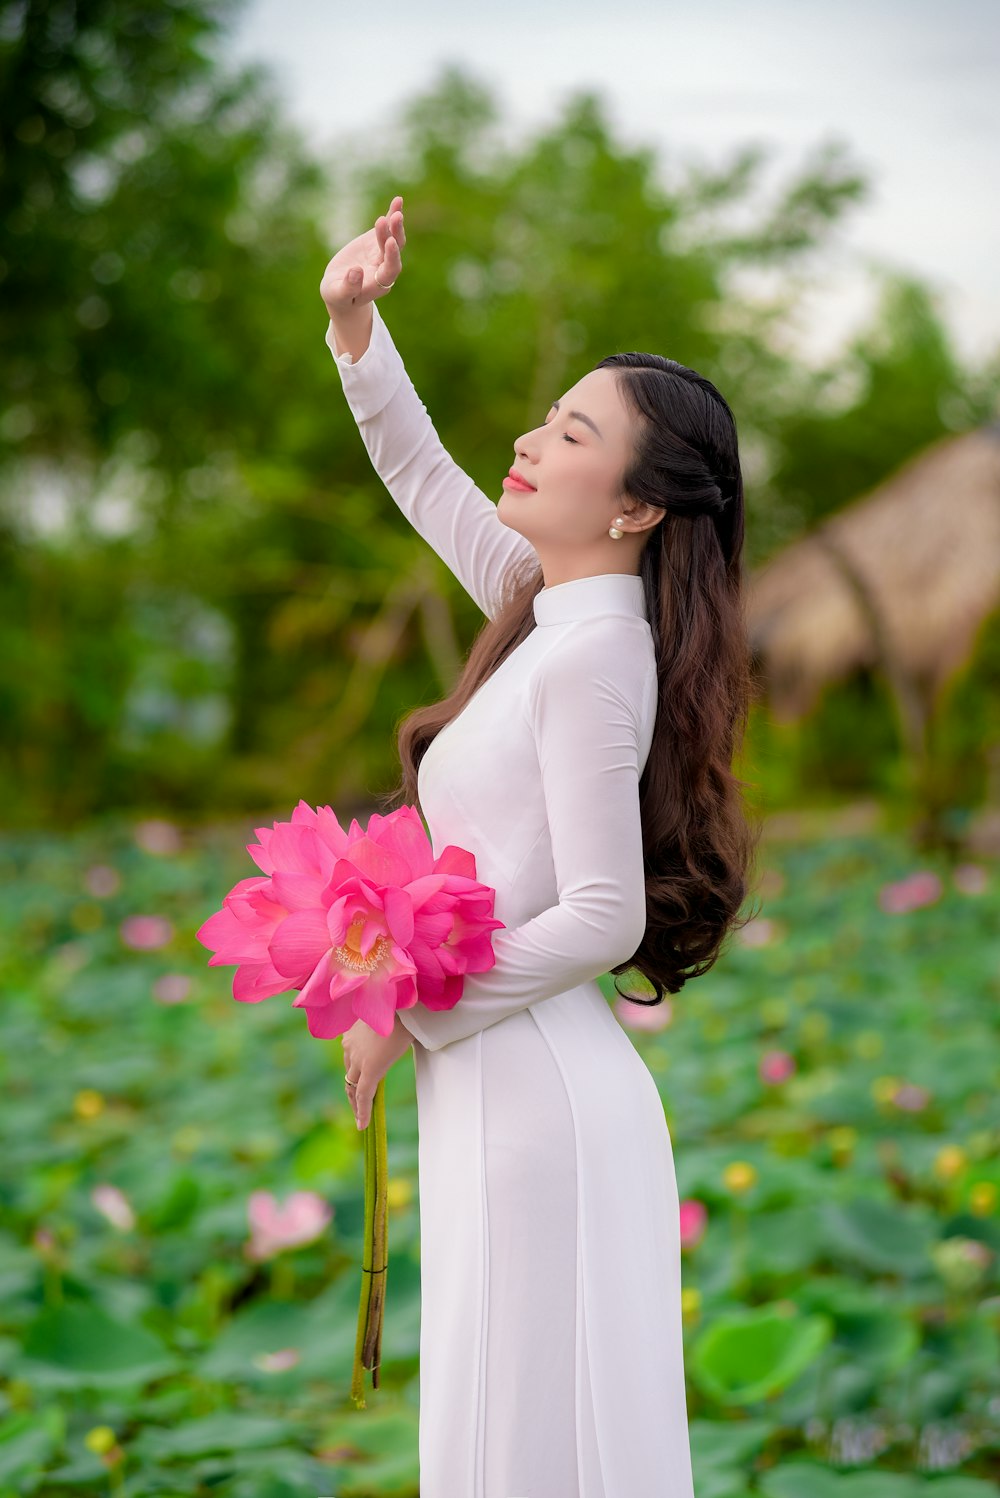 ピンクの花を持つ白い長袖ドレスの女性